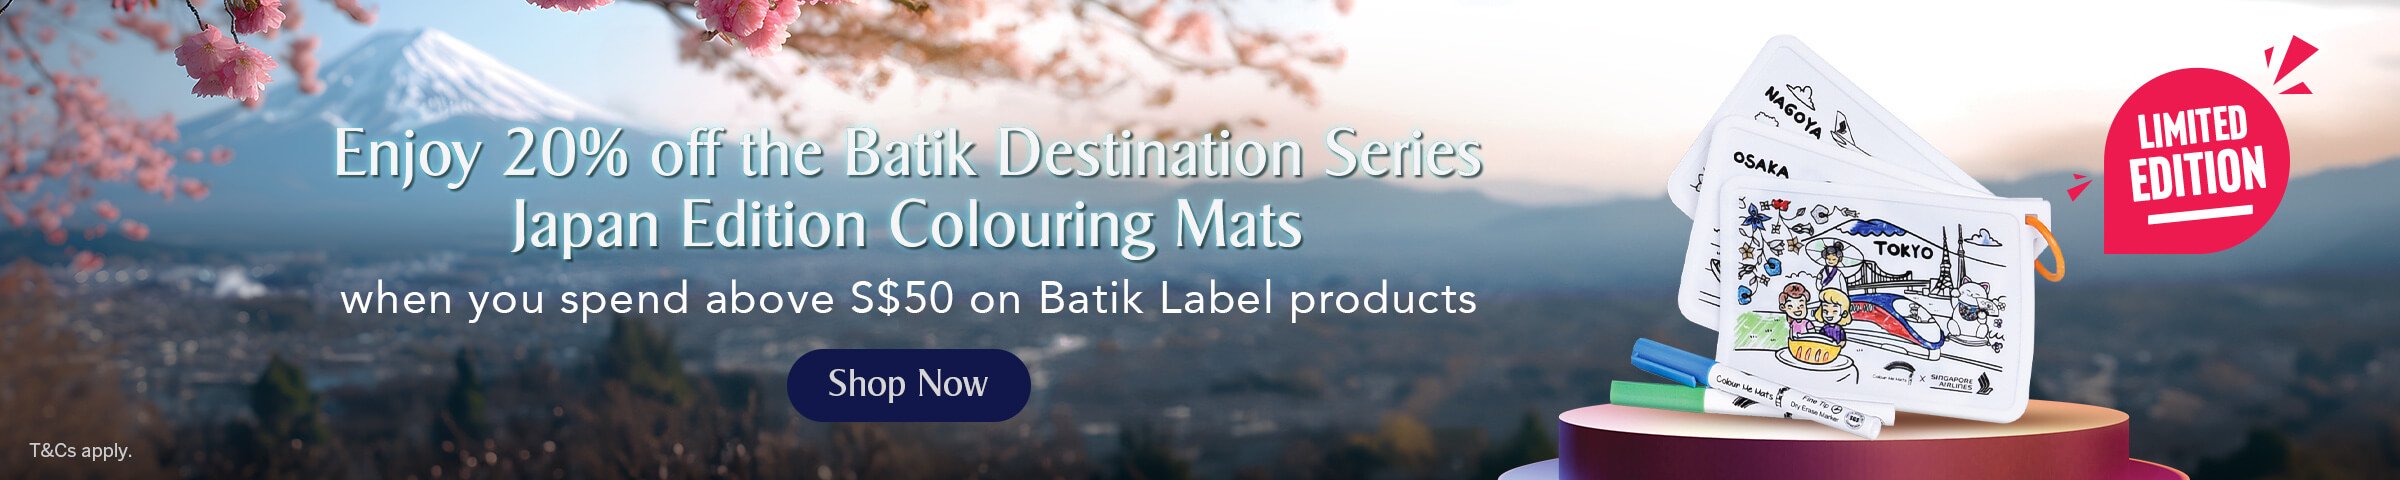 KrisShop Batik Label Concept Store